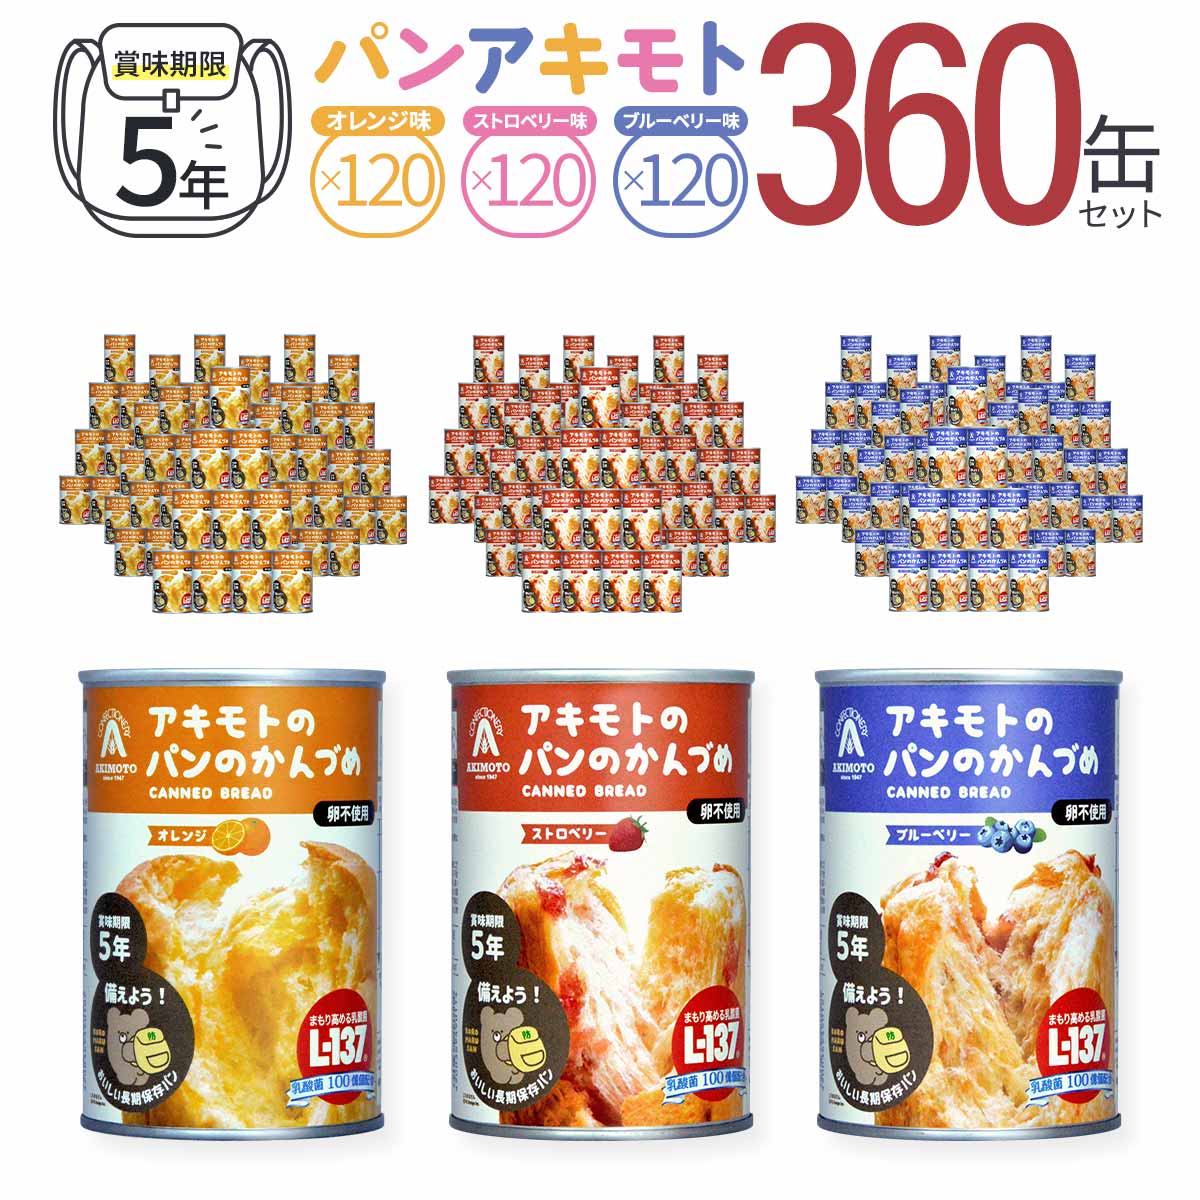 パンアキモト パンのかんづめ 賞味期限5年保存シリーズ 360缶セット（3種×120缶）乳酸菌L-137入り エッグフリー(卵不使用) PANCAN